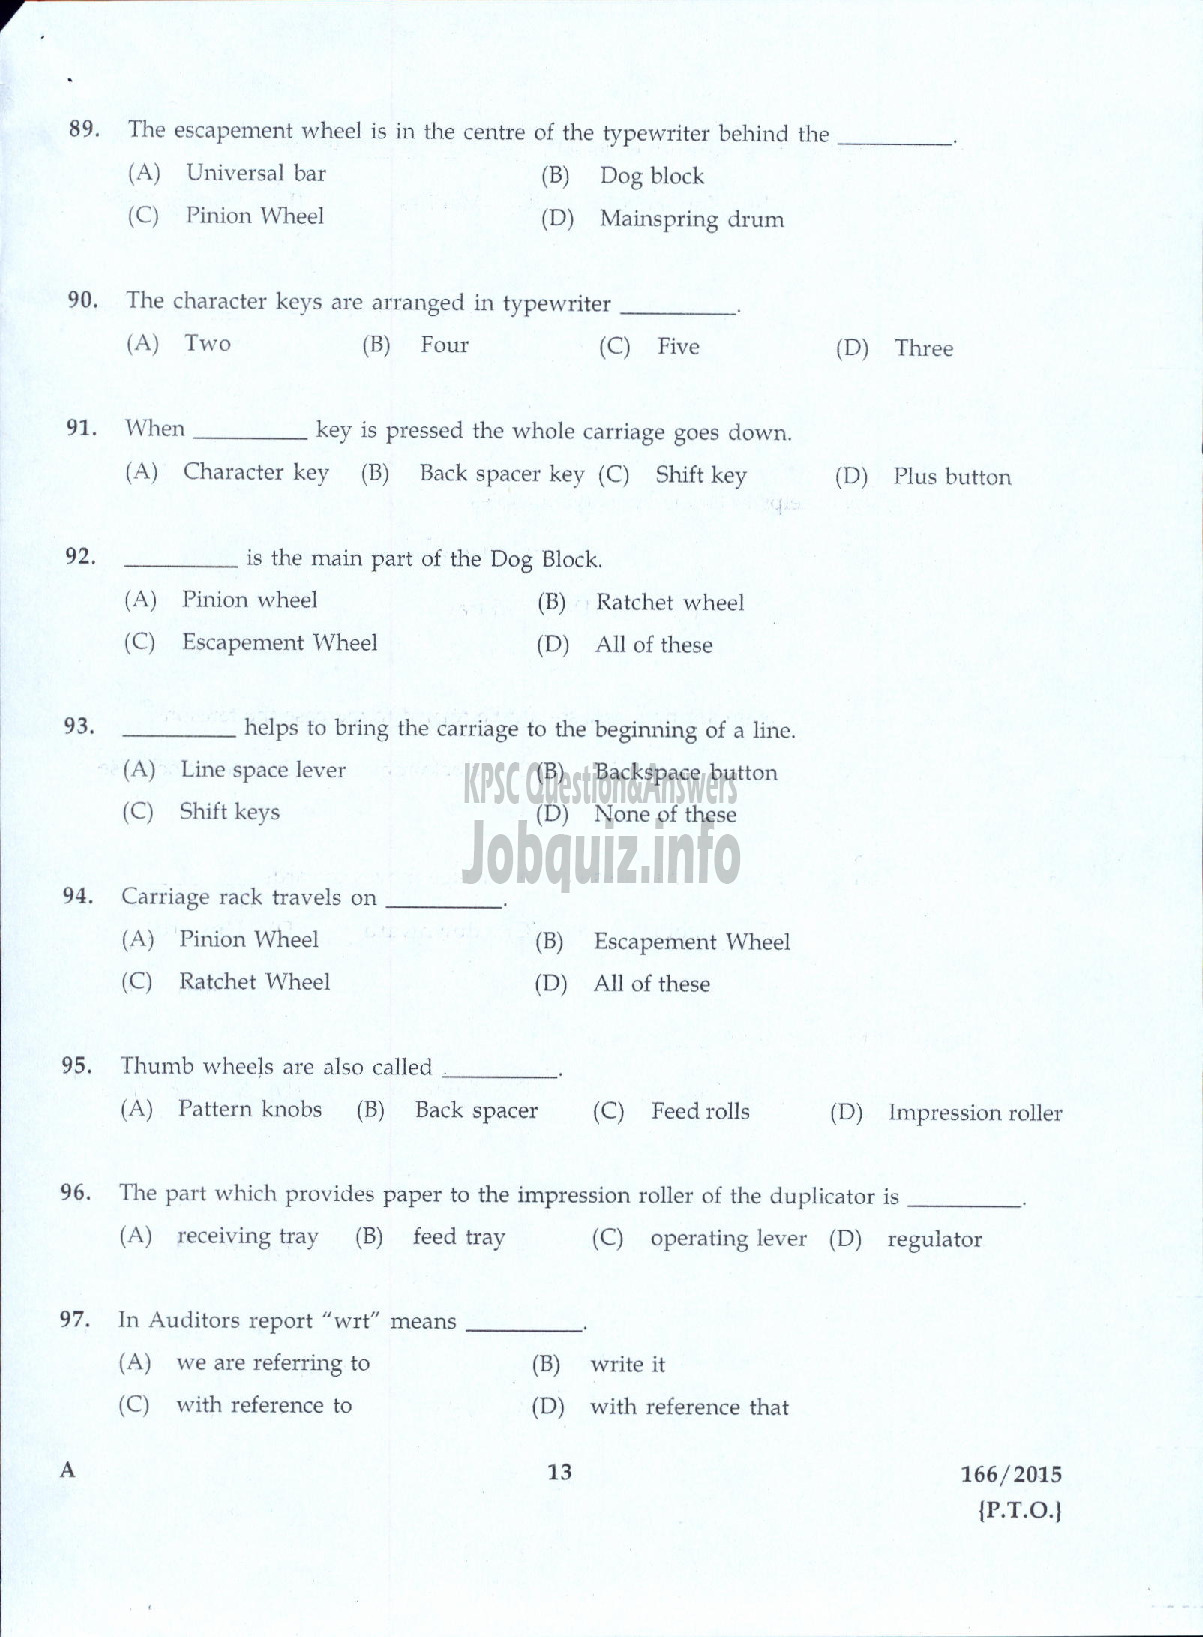 Kerala PSC Question Paper - LOWER DIVISION TYPIST JUNIOR FAIR COPY ASSISTANT KSEB-11